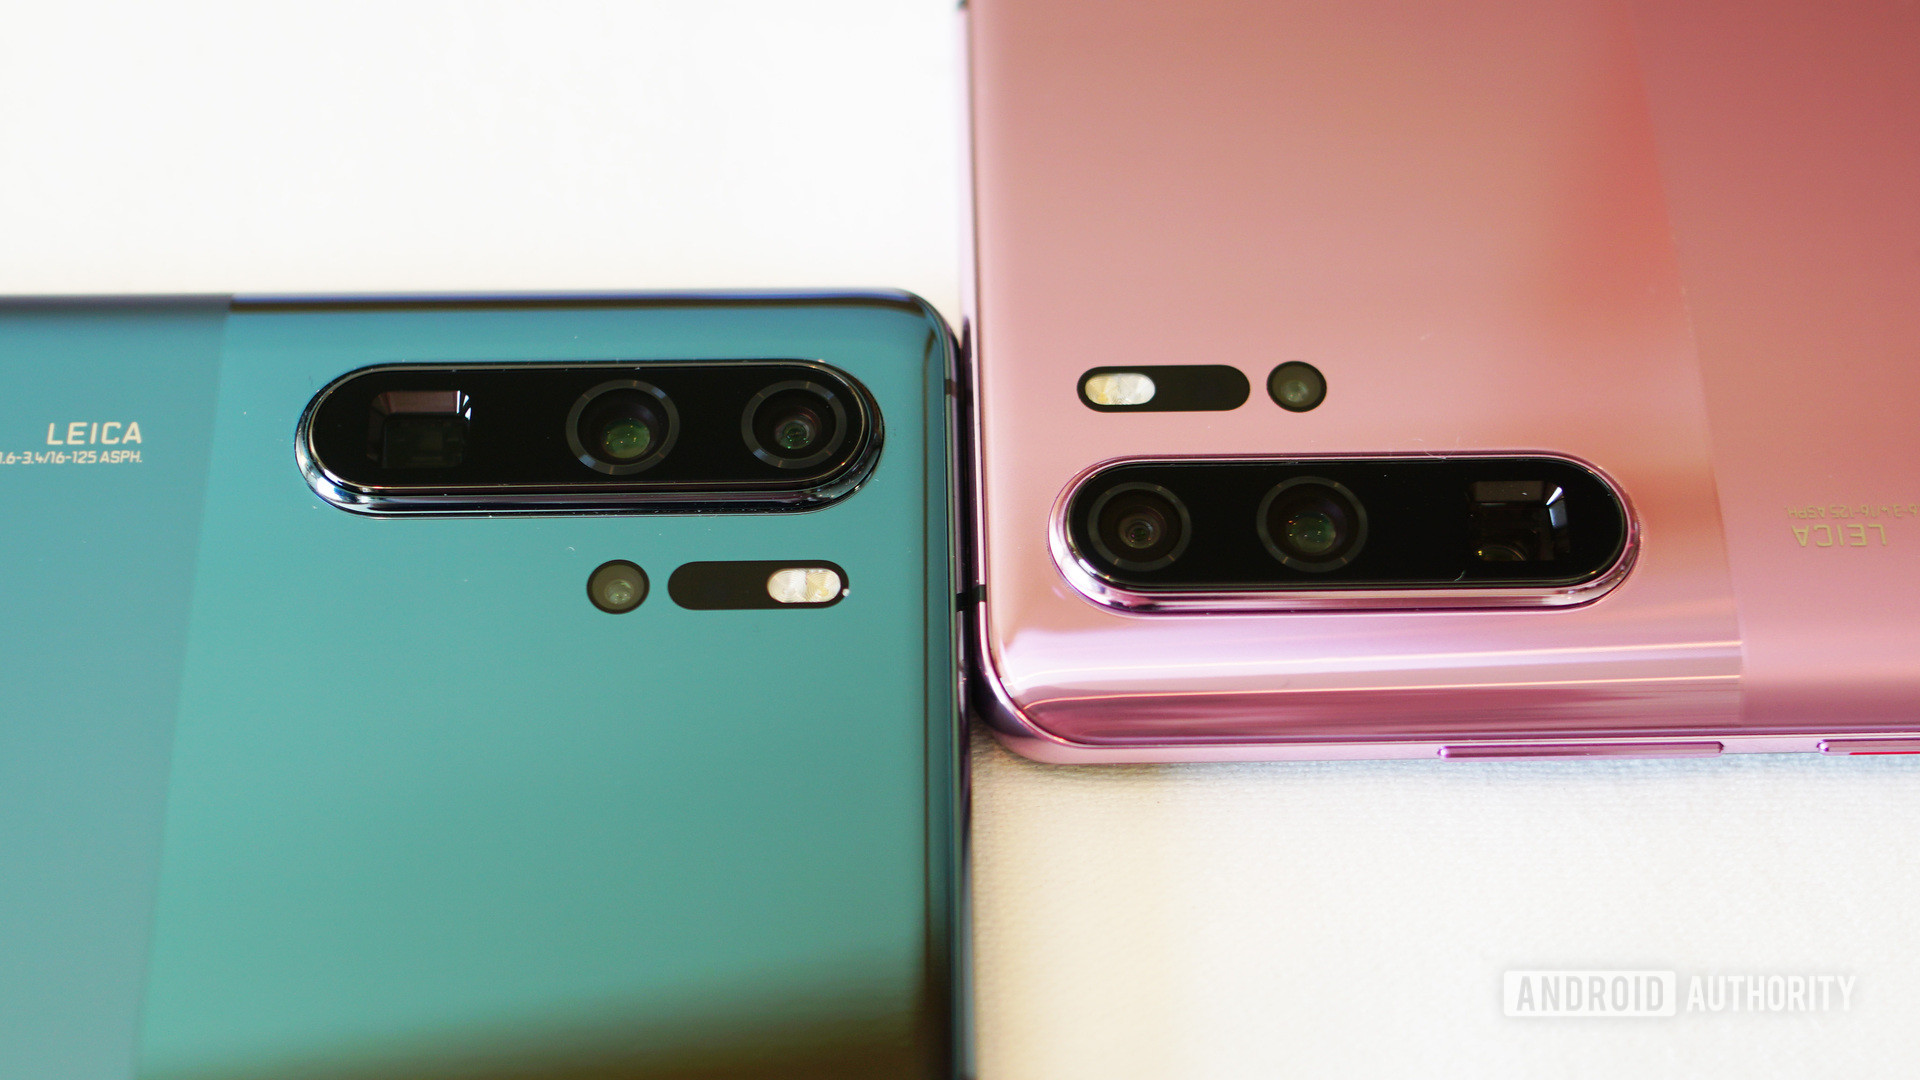 [IFA 2019] Huawei ra
mắt New P30 Pro: Phiên bản màu mới của chiếc P30 Pro, được
cài sẵn Android 10